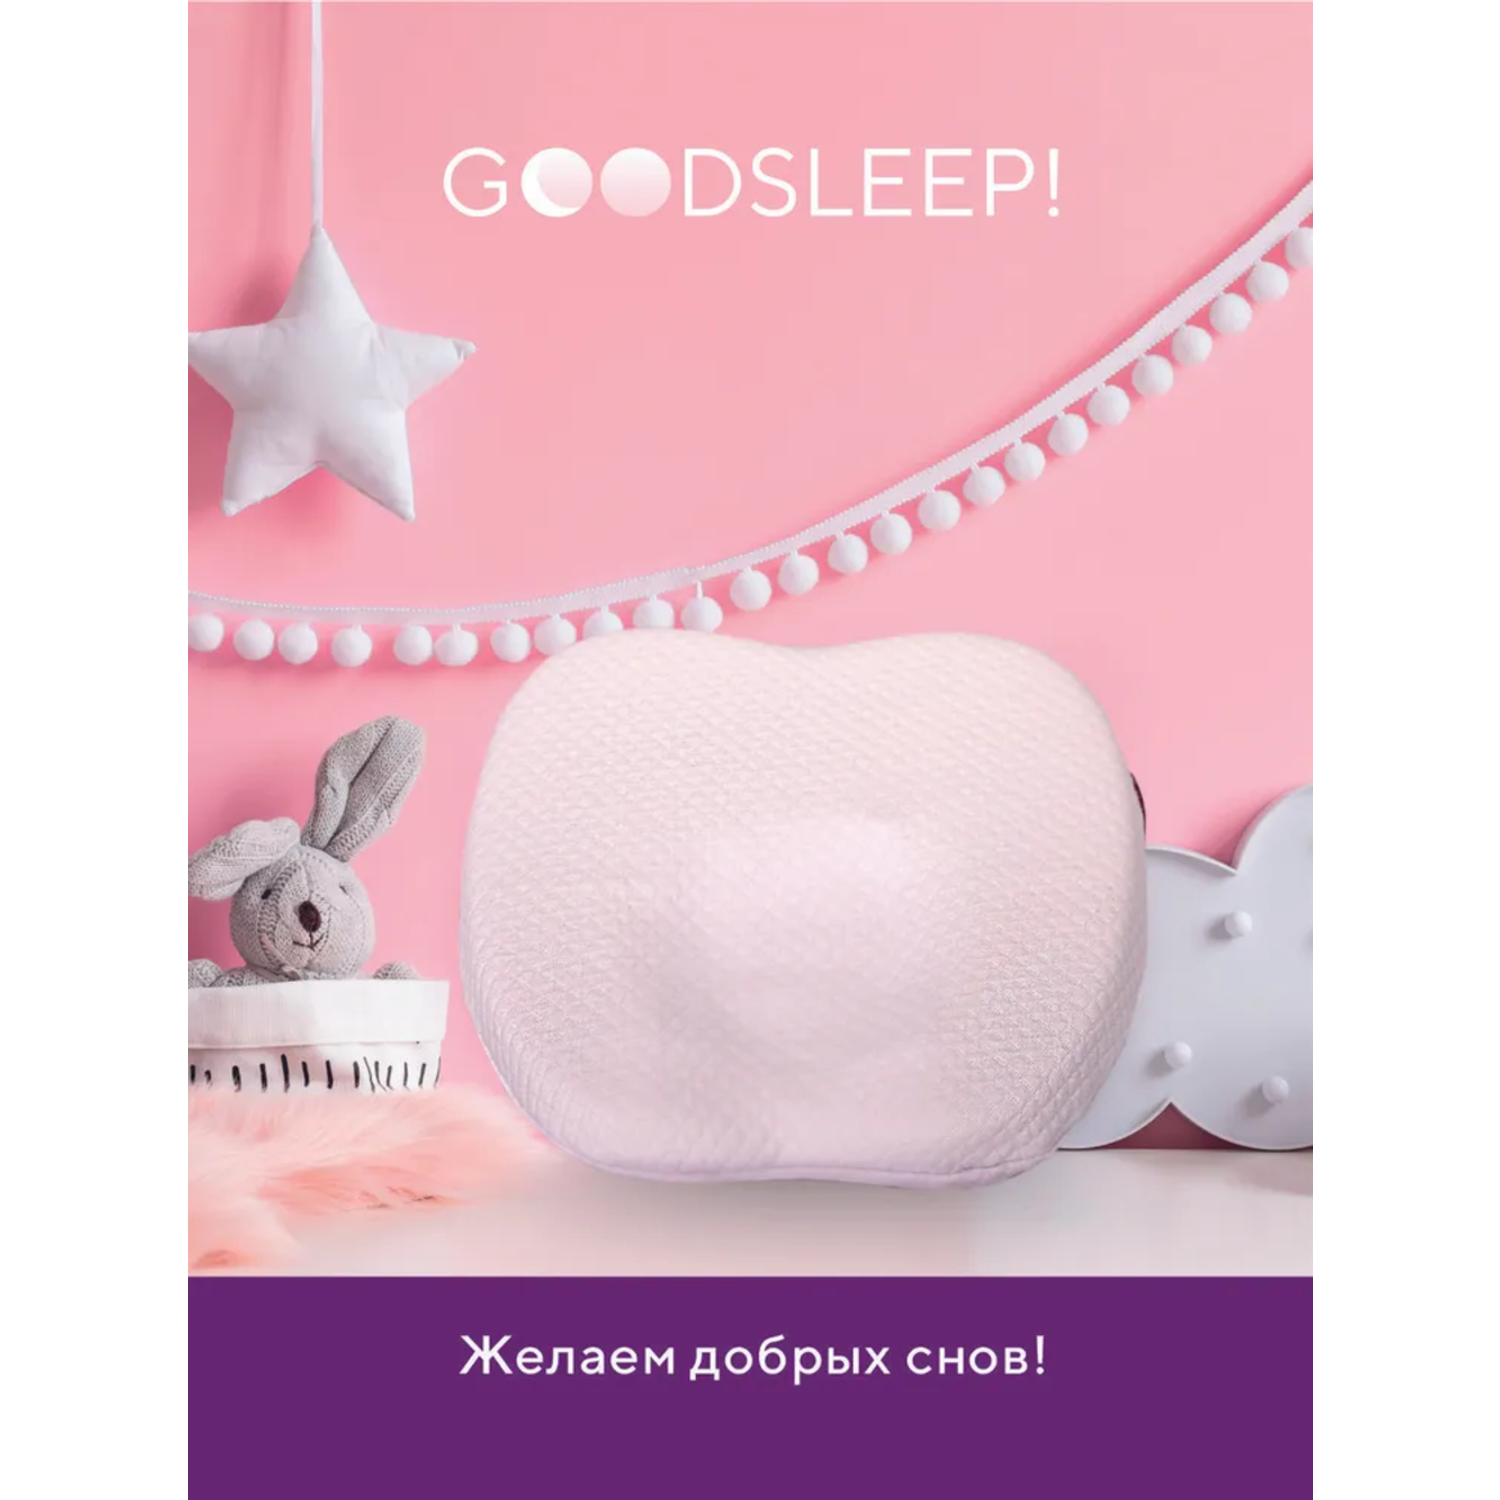 Ортопедическая подушка Goodsleep! с эффектом памяти под голову для детей от 1 до 18 мес - фото 6